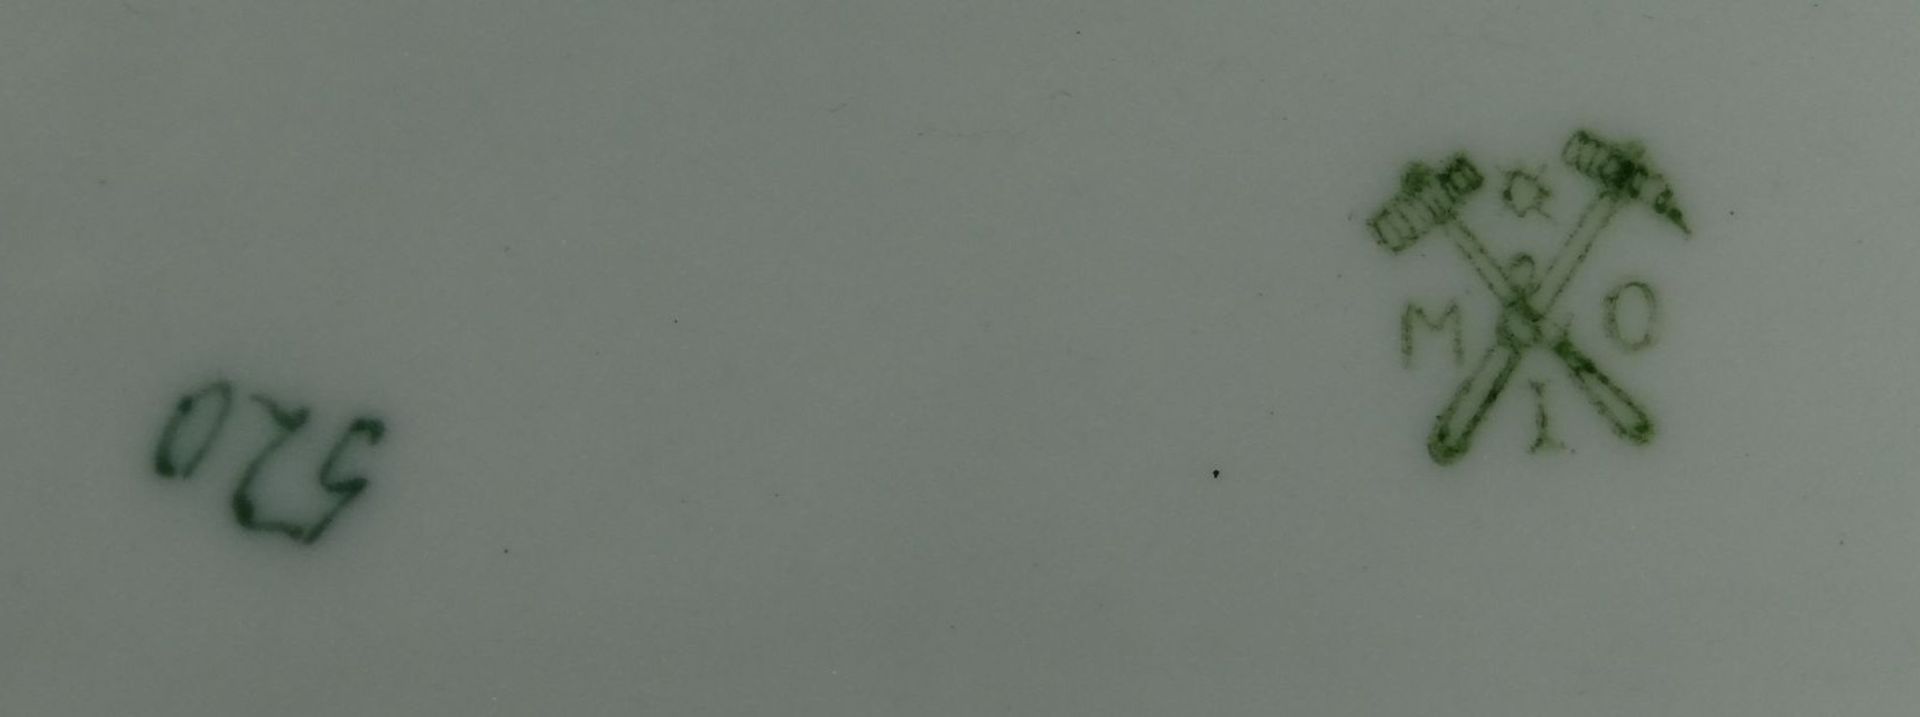 kl. Schale mit Woifdarstellung "Metzler&Orloff" dat. seitlich Union 1911, 7x14 cm- - -22.61 % - Image 4 of 5